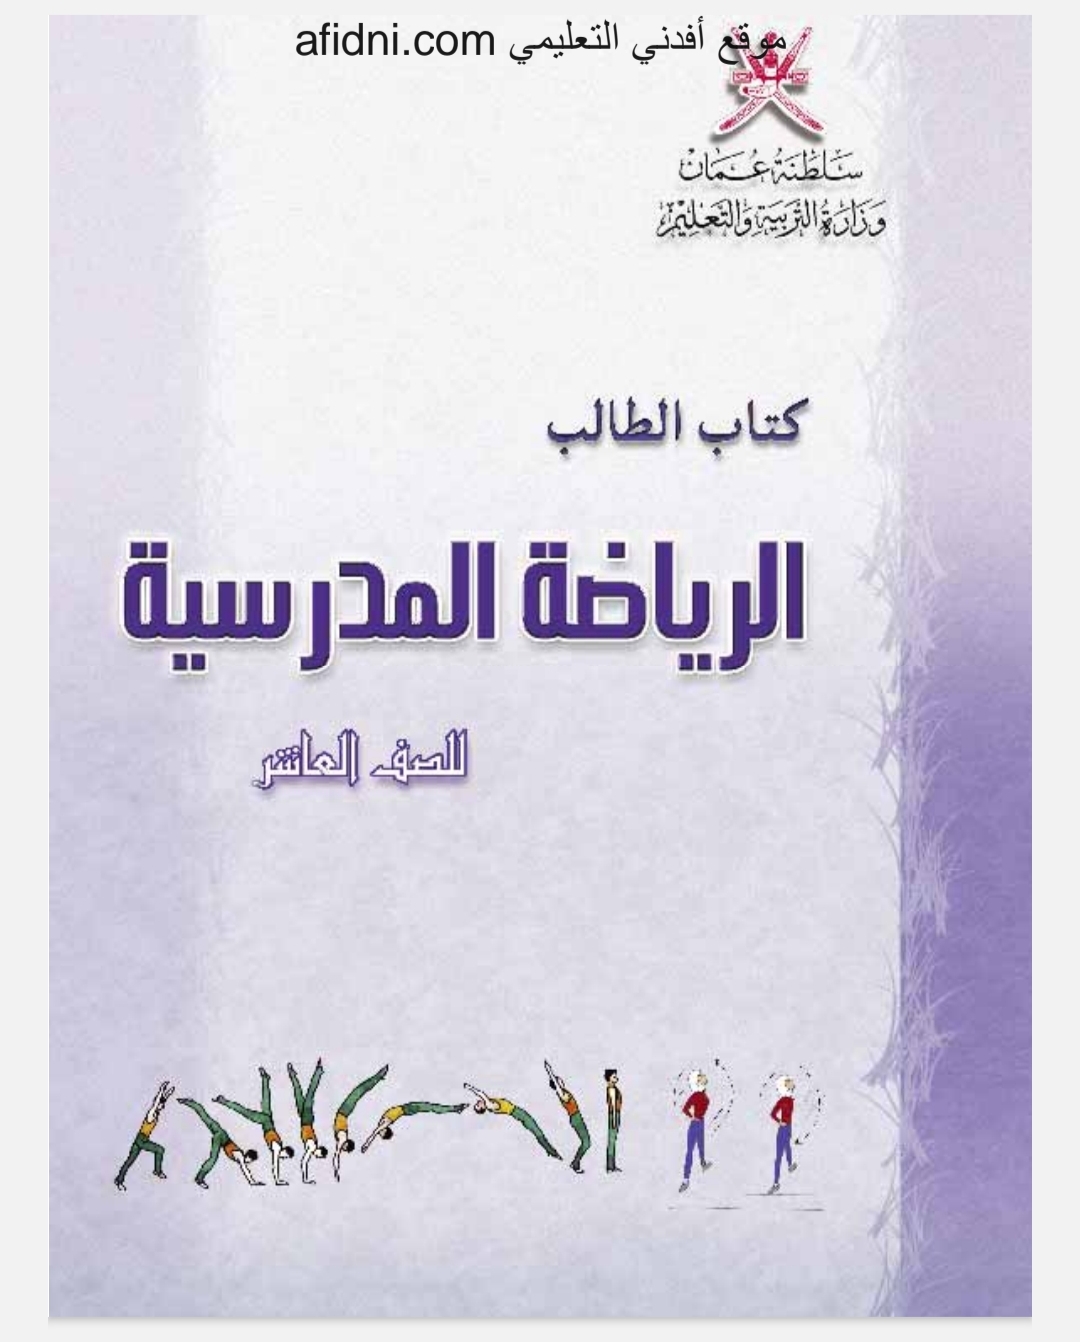 كتاب الطالب في مادة الرياضة المدرسية للصف العاشر المنهاج العماني